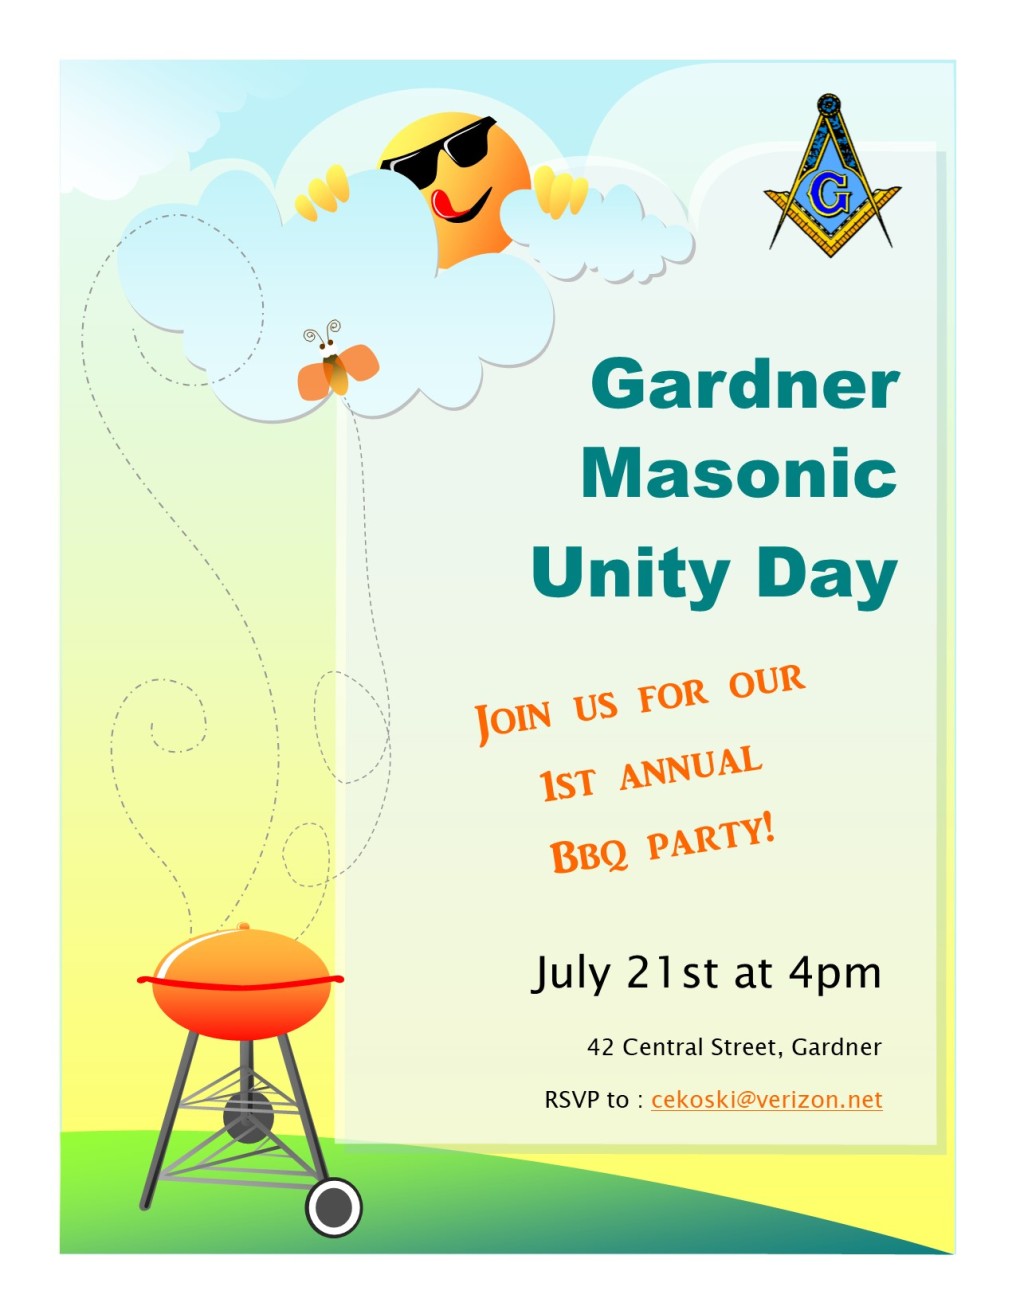 Gardner Masonic Unity Day